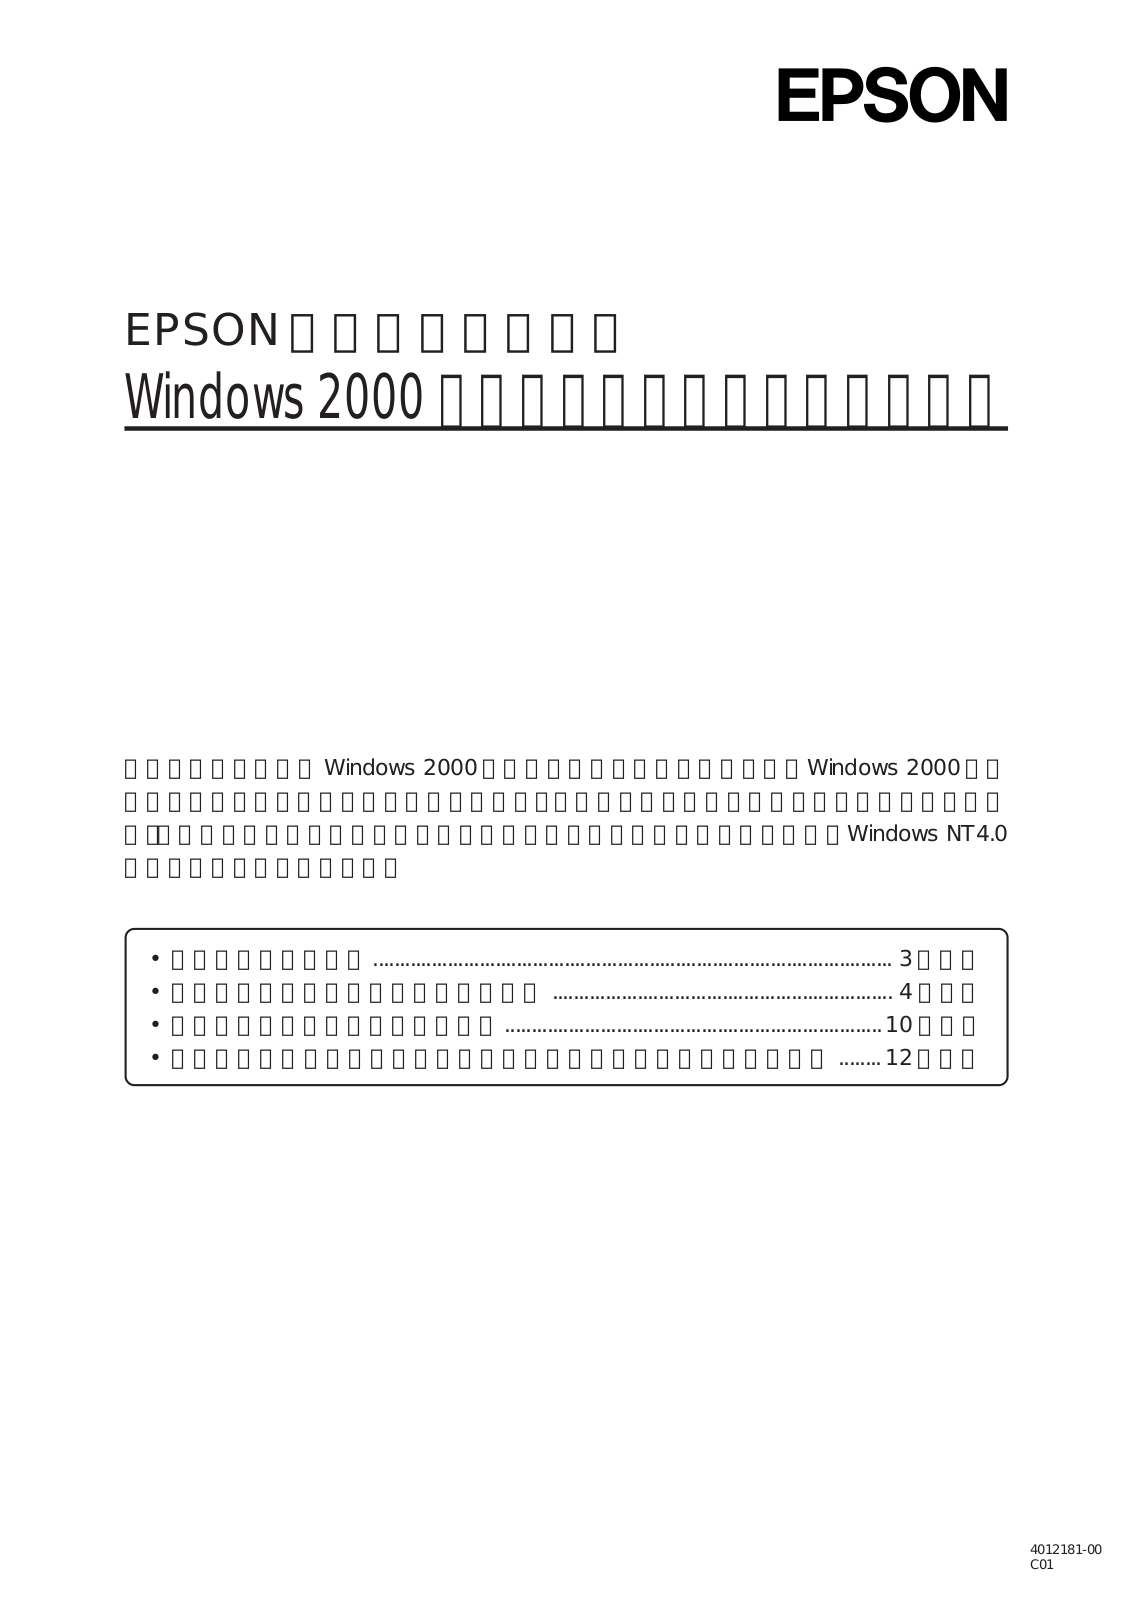 EPSON LP-9600S, LP-8300F, LP-8600FX, LP-9200SX, LP-1900 Printer driver instruction manual for Windows 2000